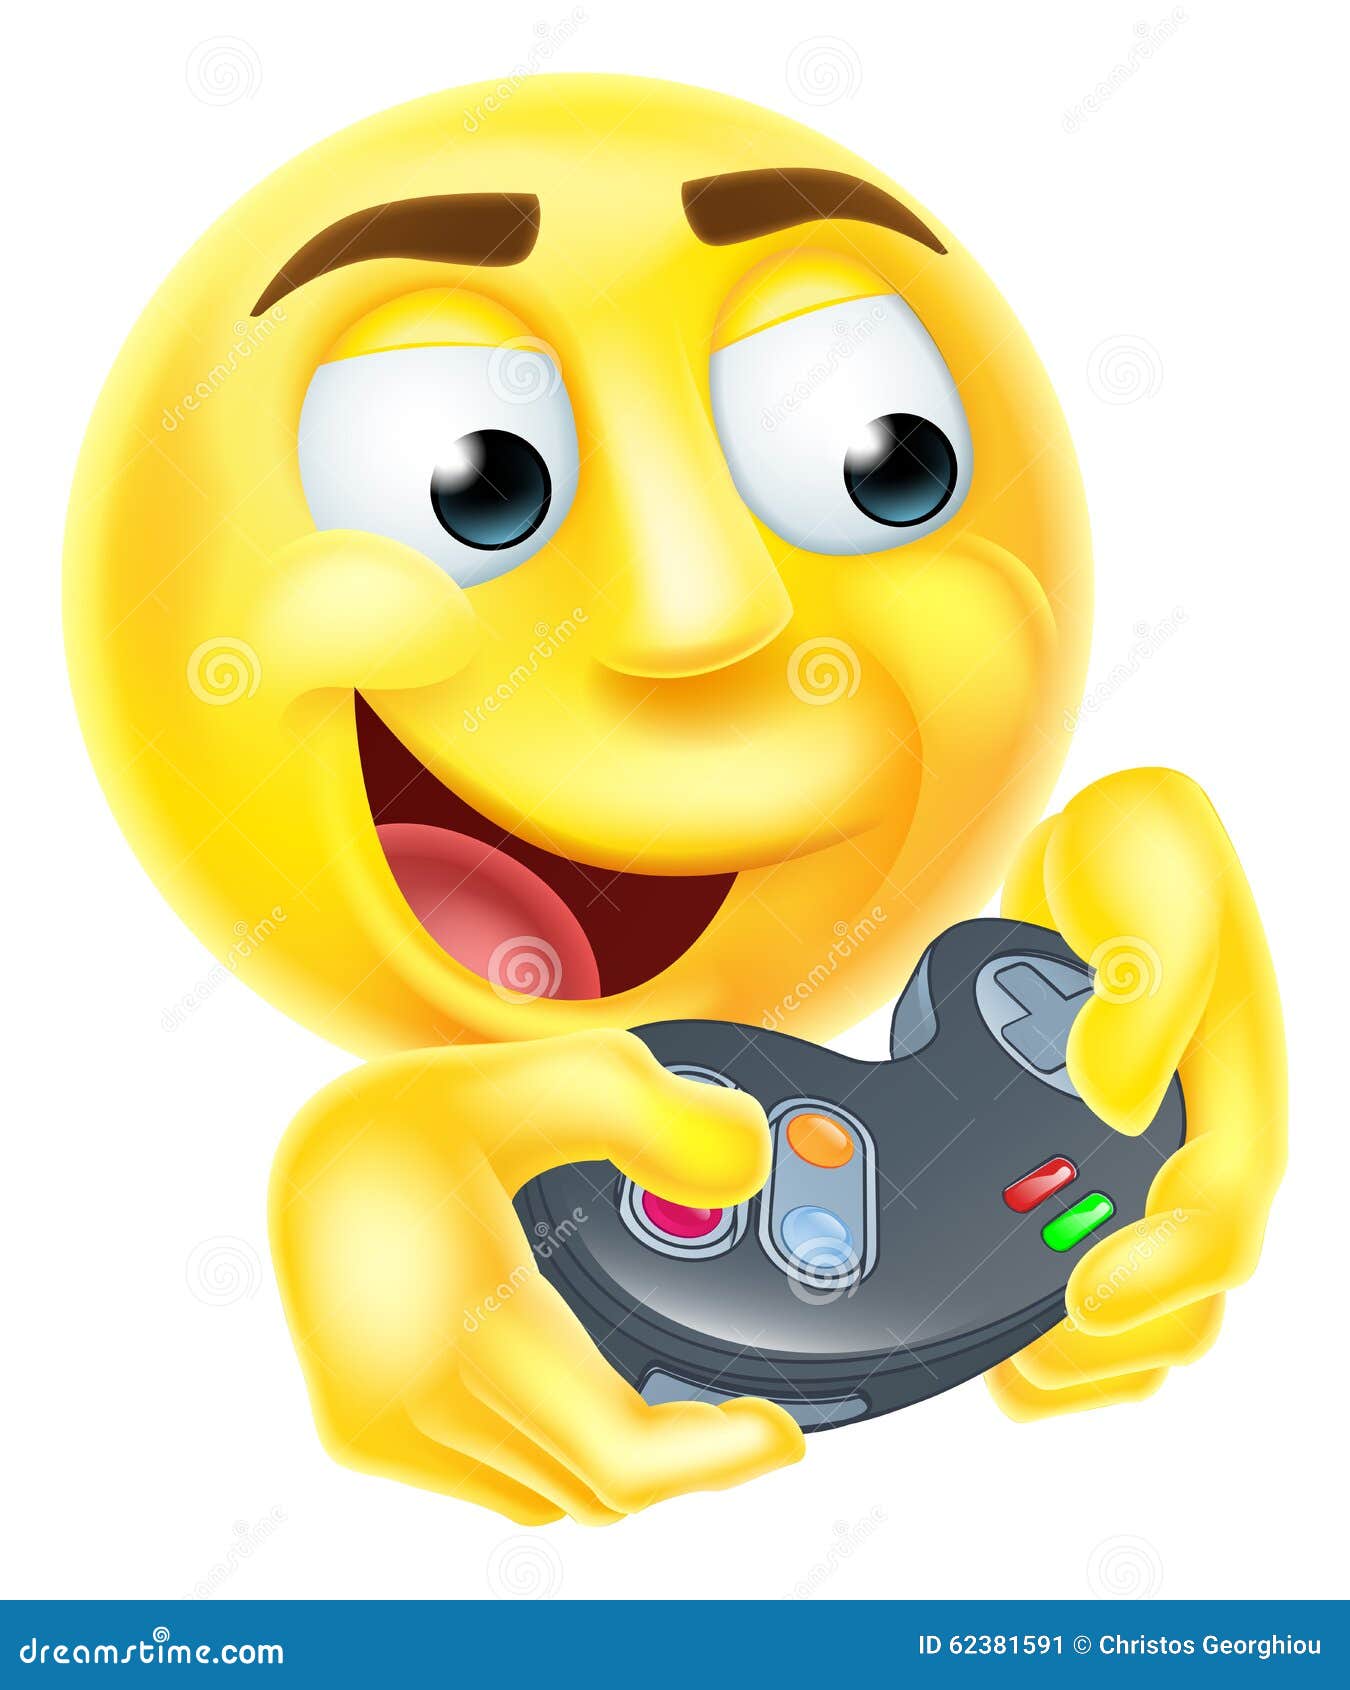 emoji playing